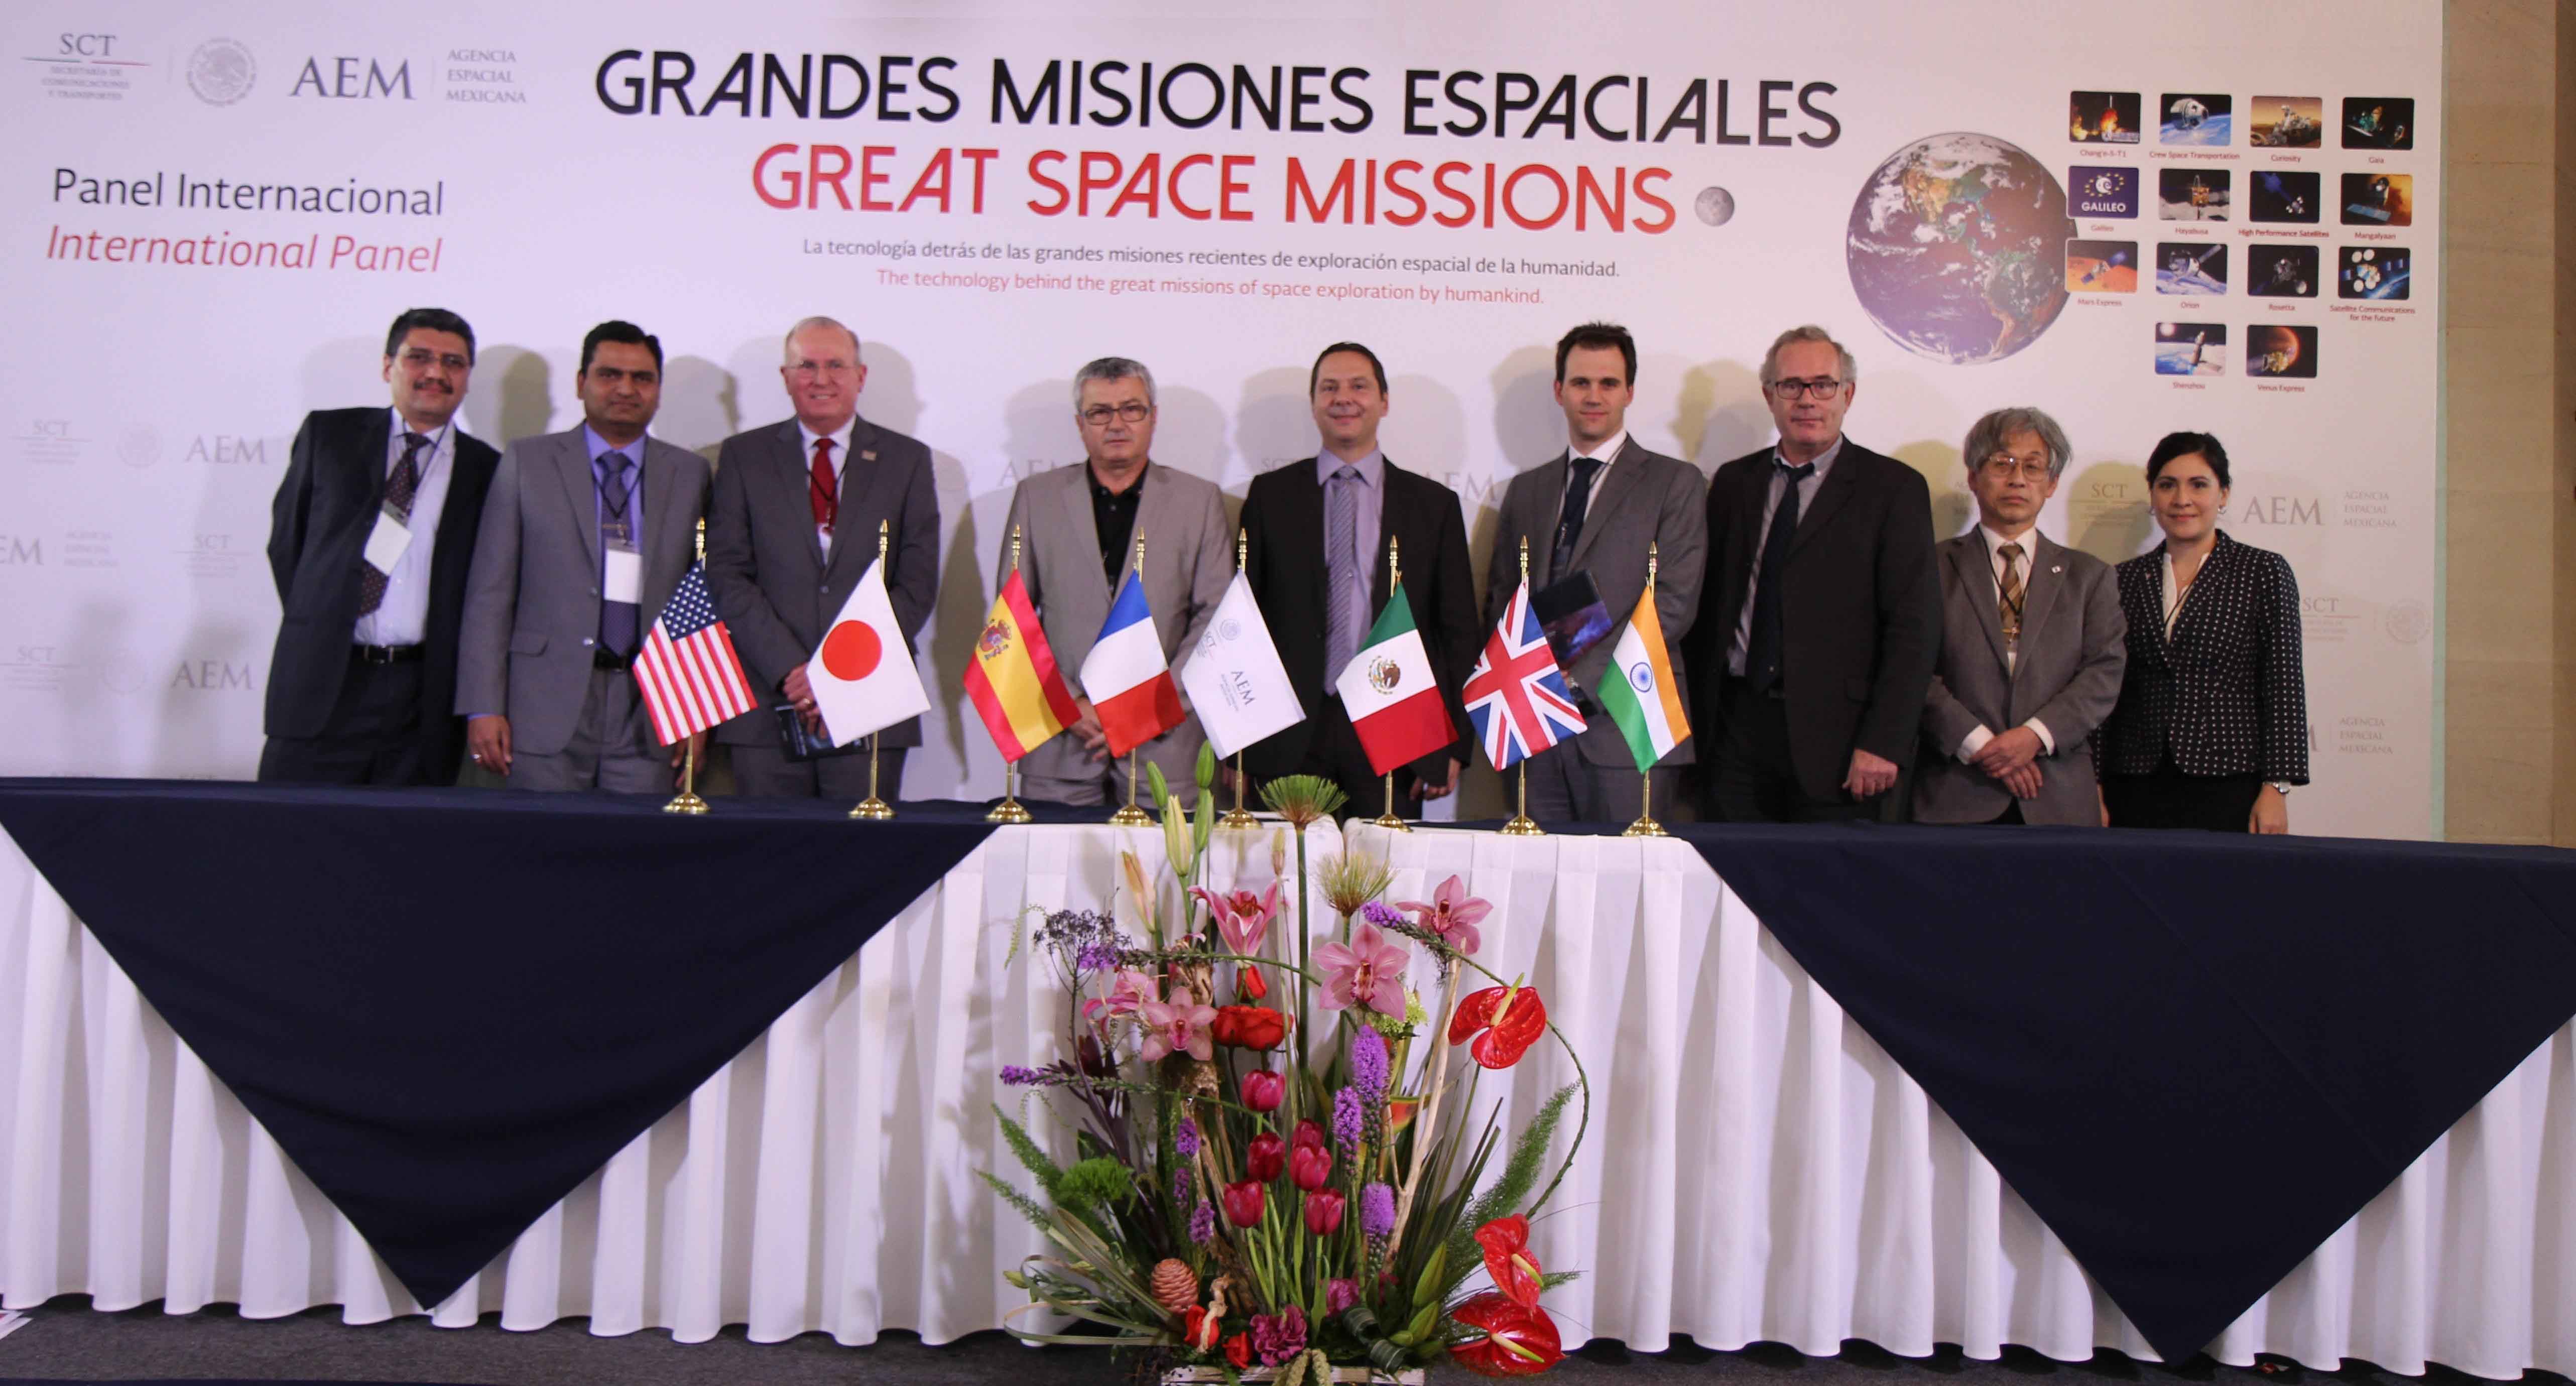 Organiza AEM encuentro internacional “Grandes Misiones Espaciales”
